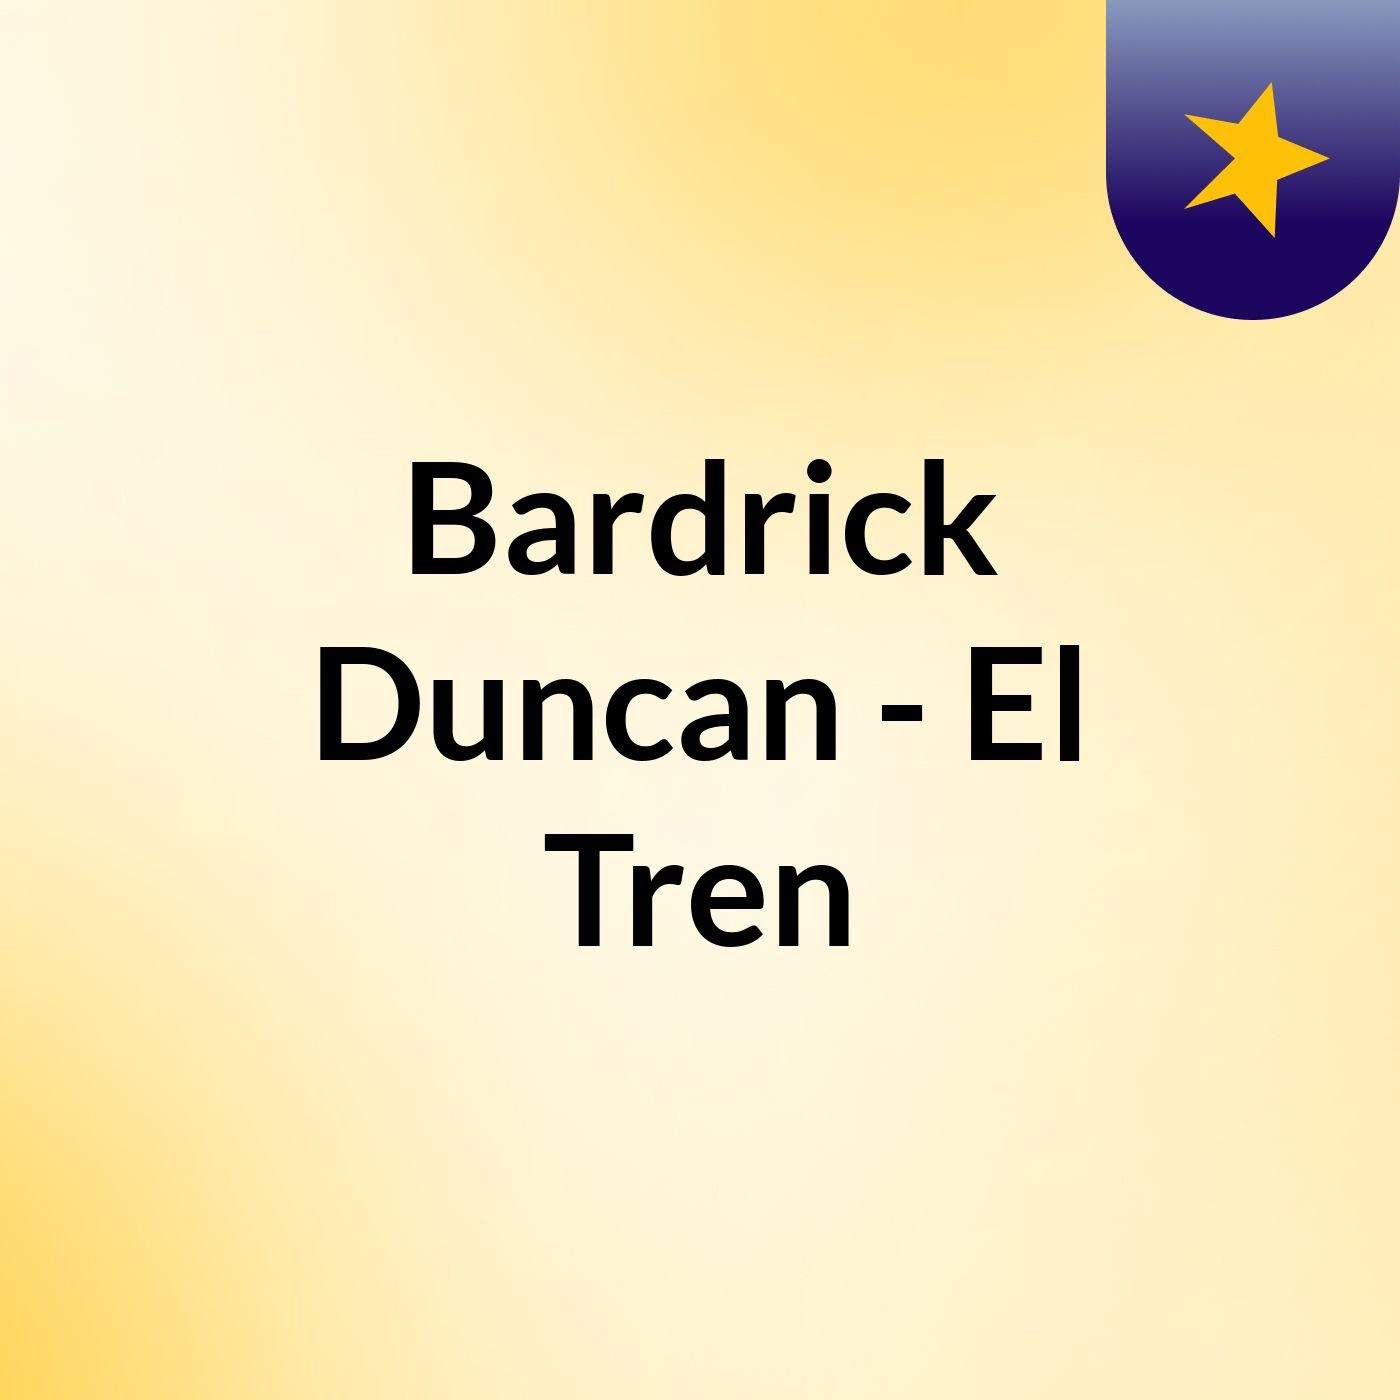 Bardrick Duncan - El Tren